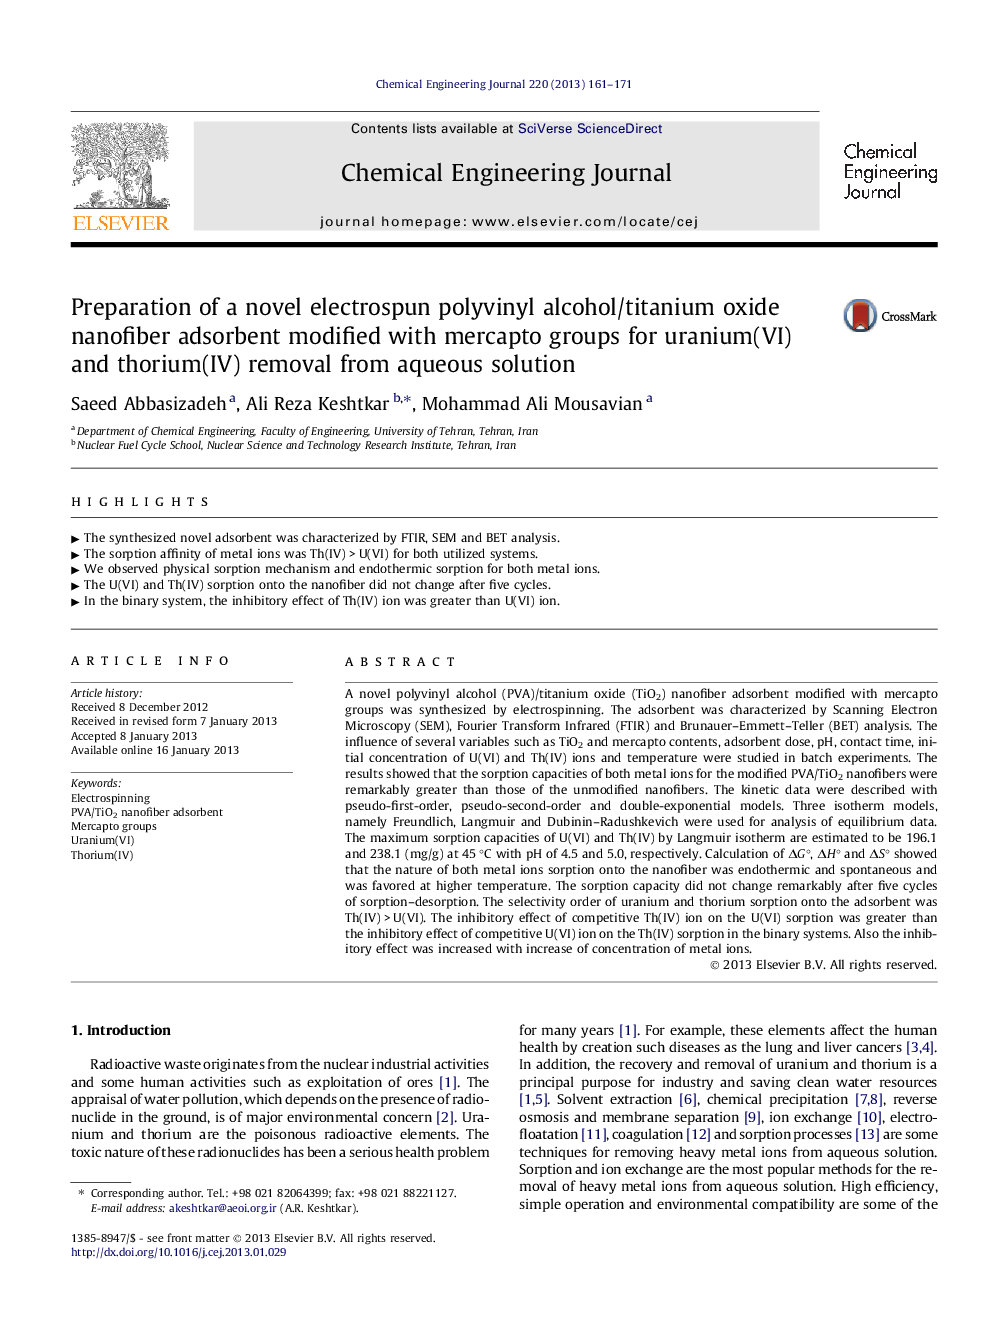 Preparation of a novel electrospun polyvinyl alcohol/titanium oxide nanofiber adsorbent modified with mercapto groups for uranium(VI) and thorium(IV) removal from aqueous solution